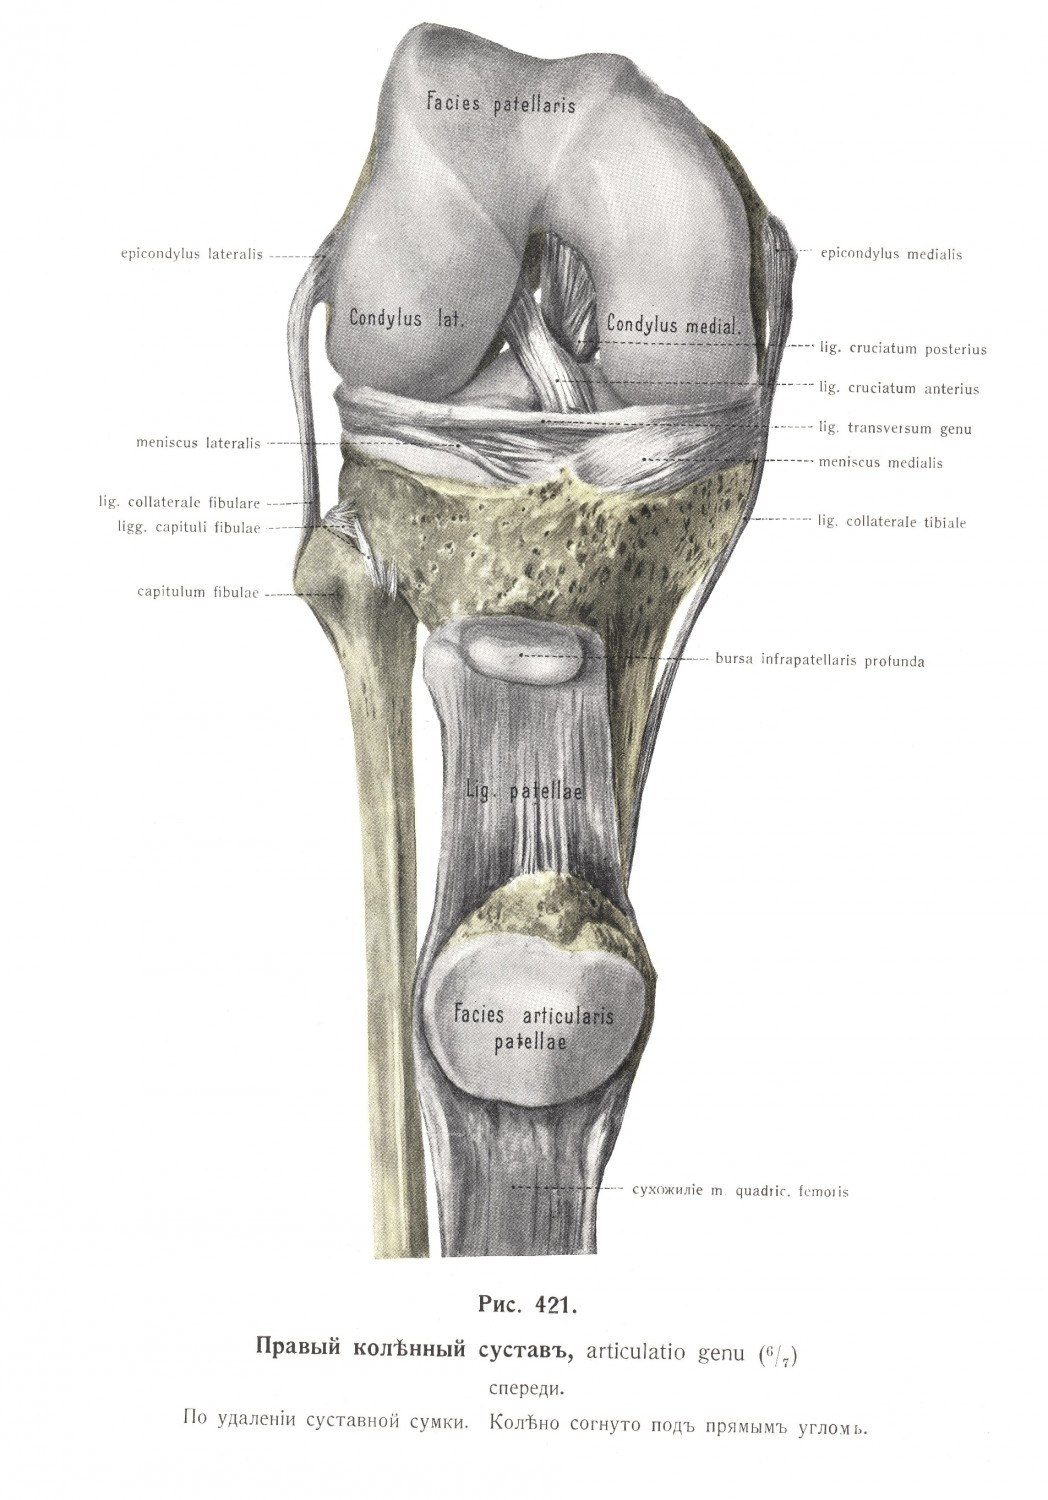 Правый коленный сустав, articulatio genus